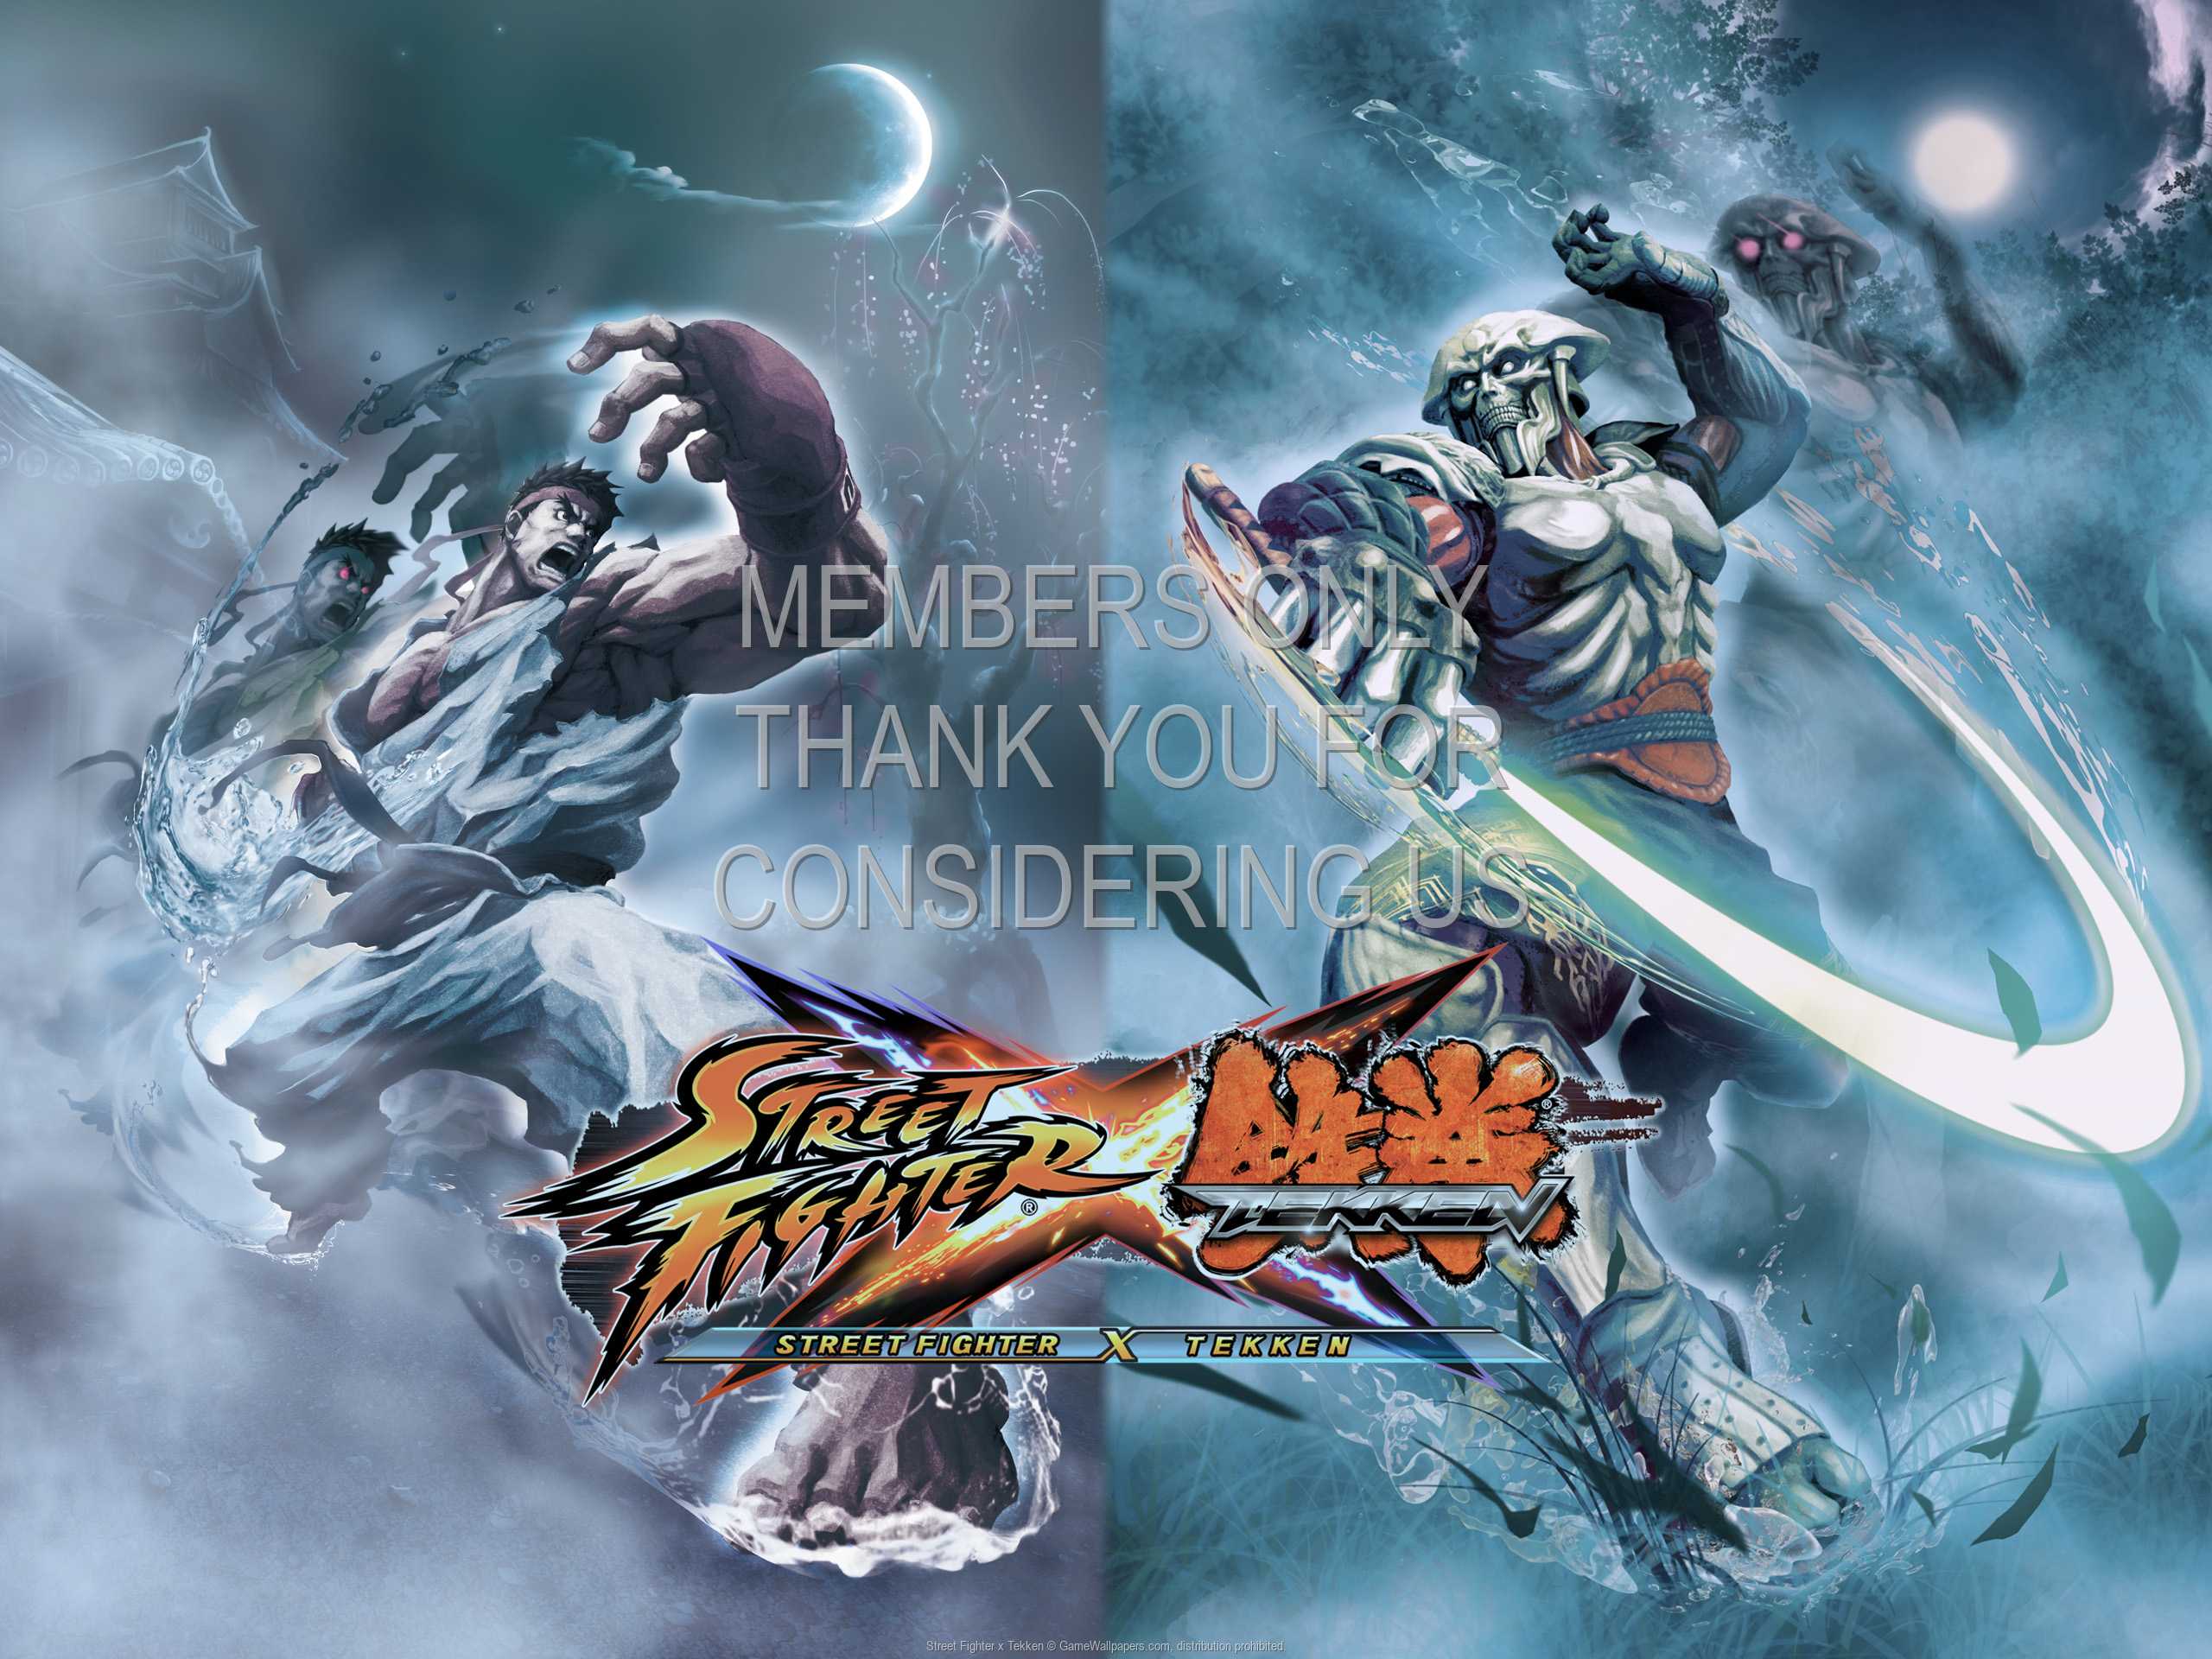 Street Fighter x Tekken 1080p Horizontal Mobile wallpaper or background 03